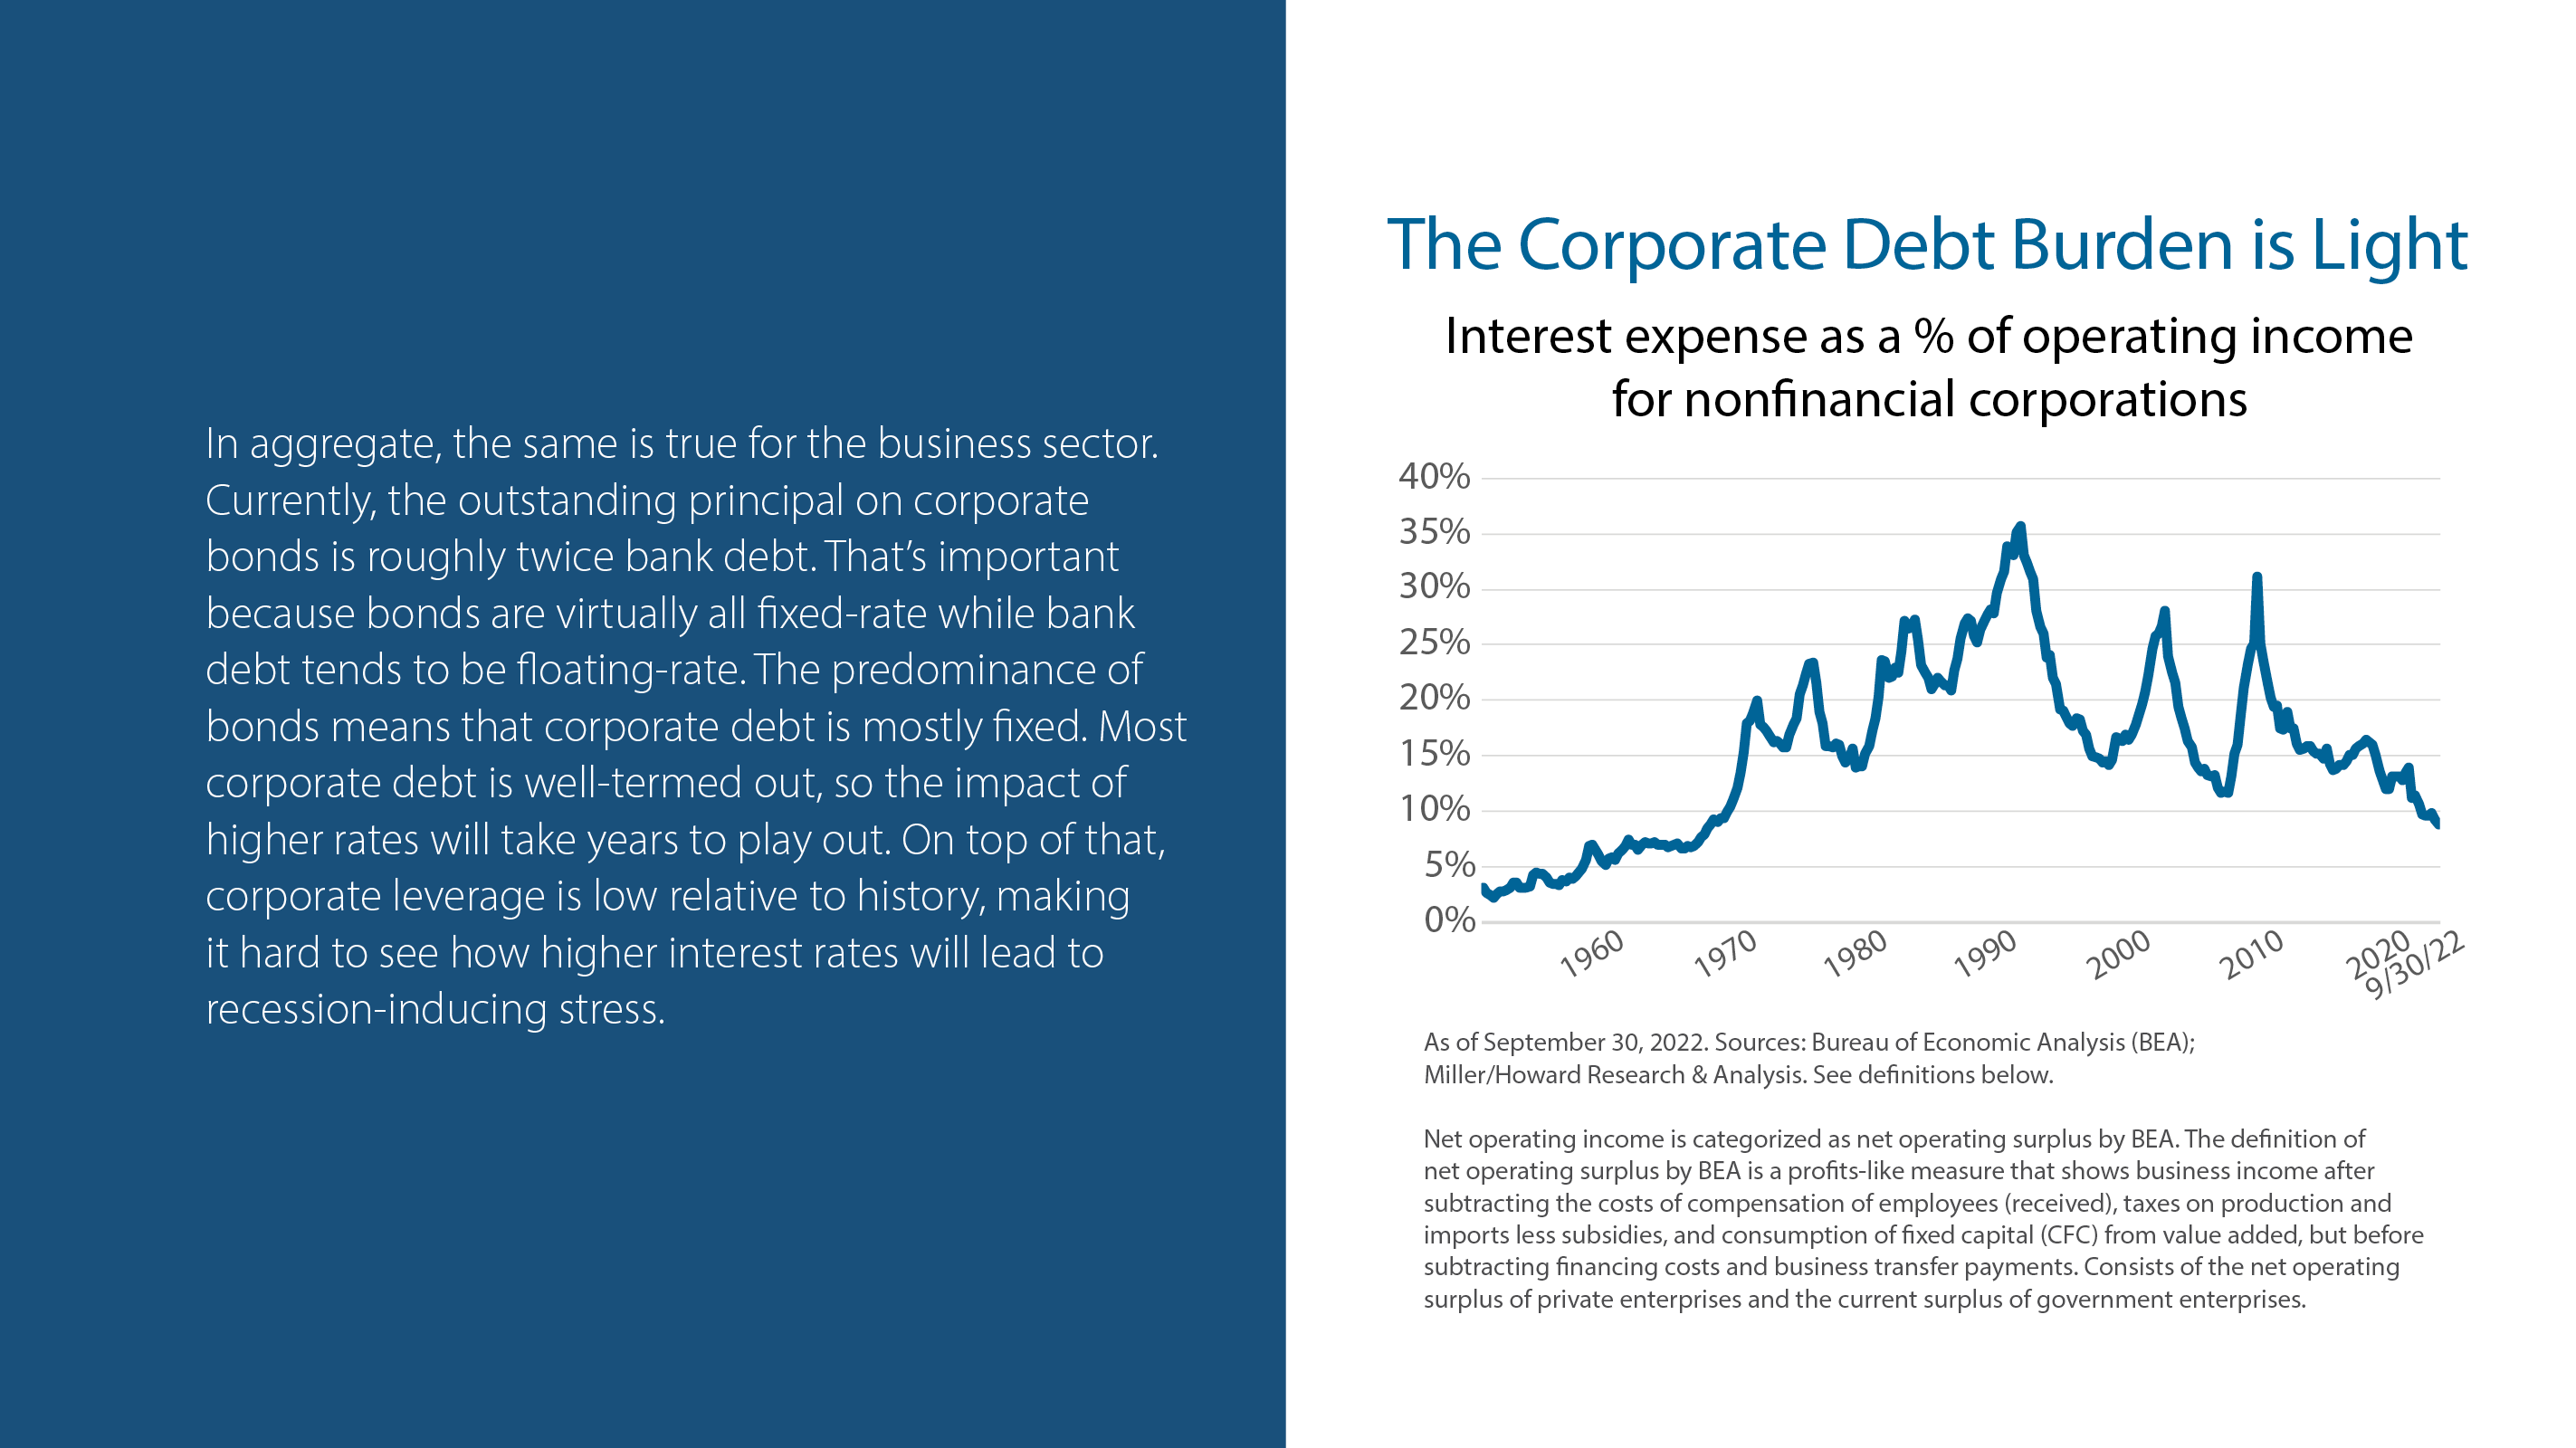 The Corporate Debt Burden is Light